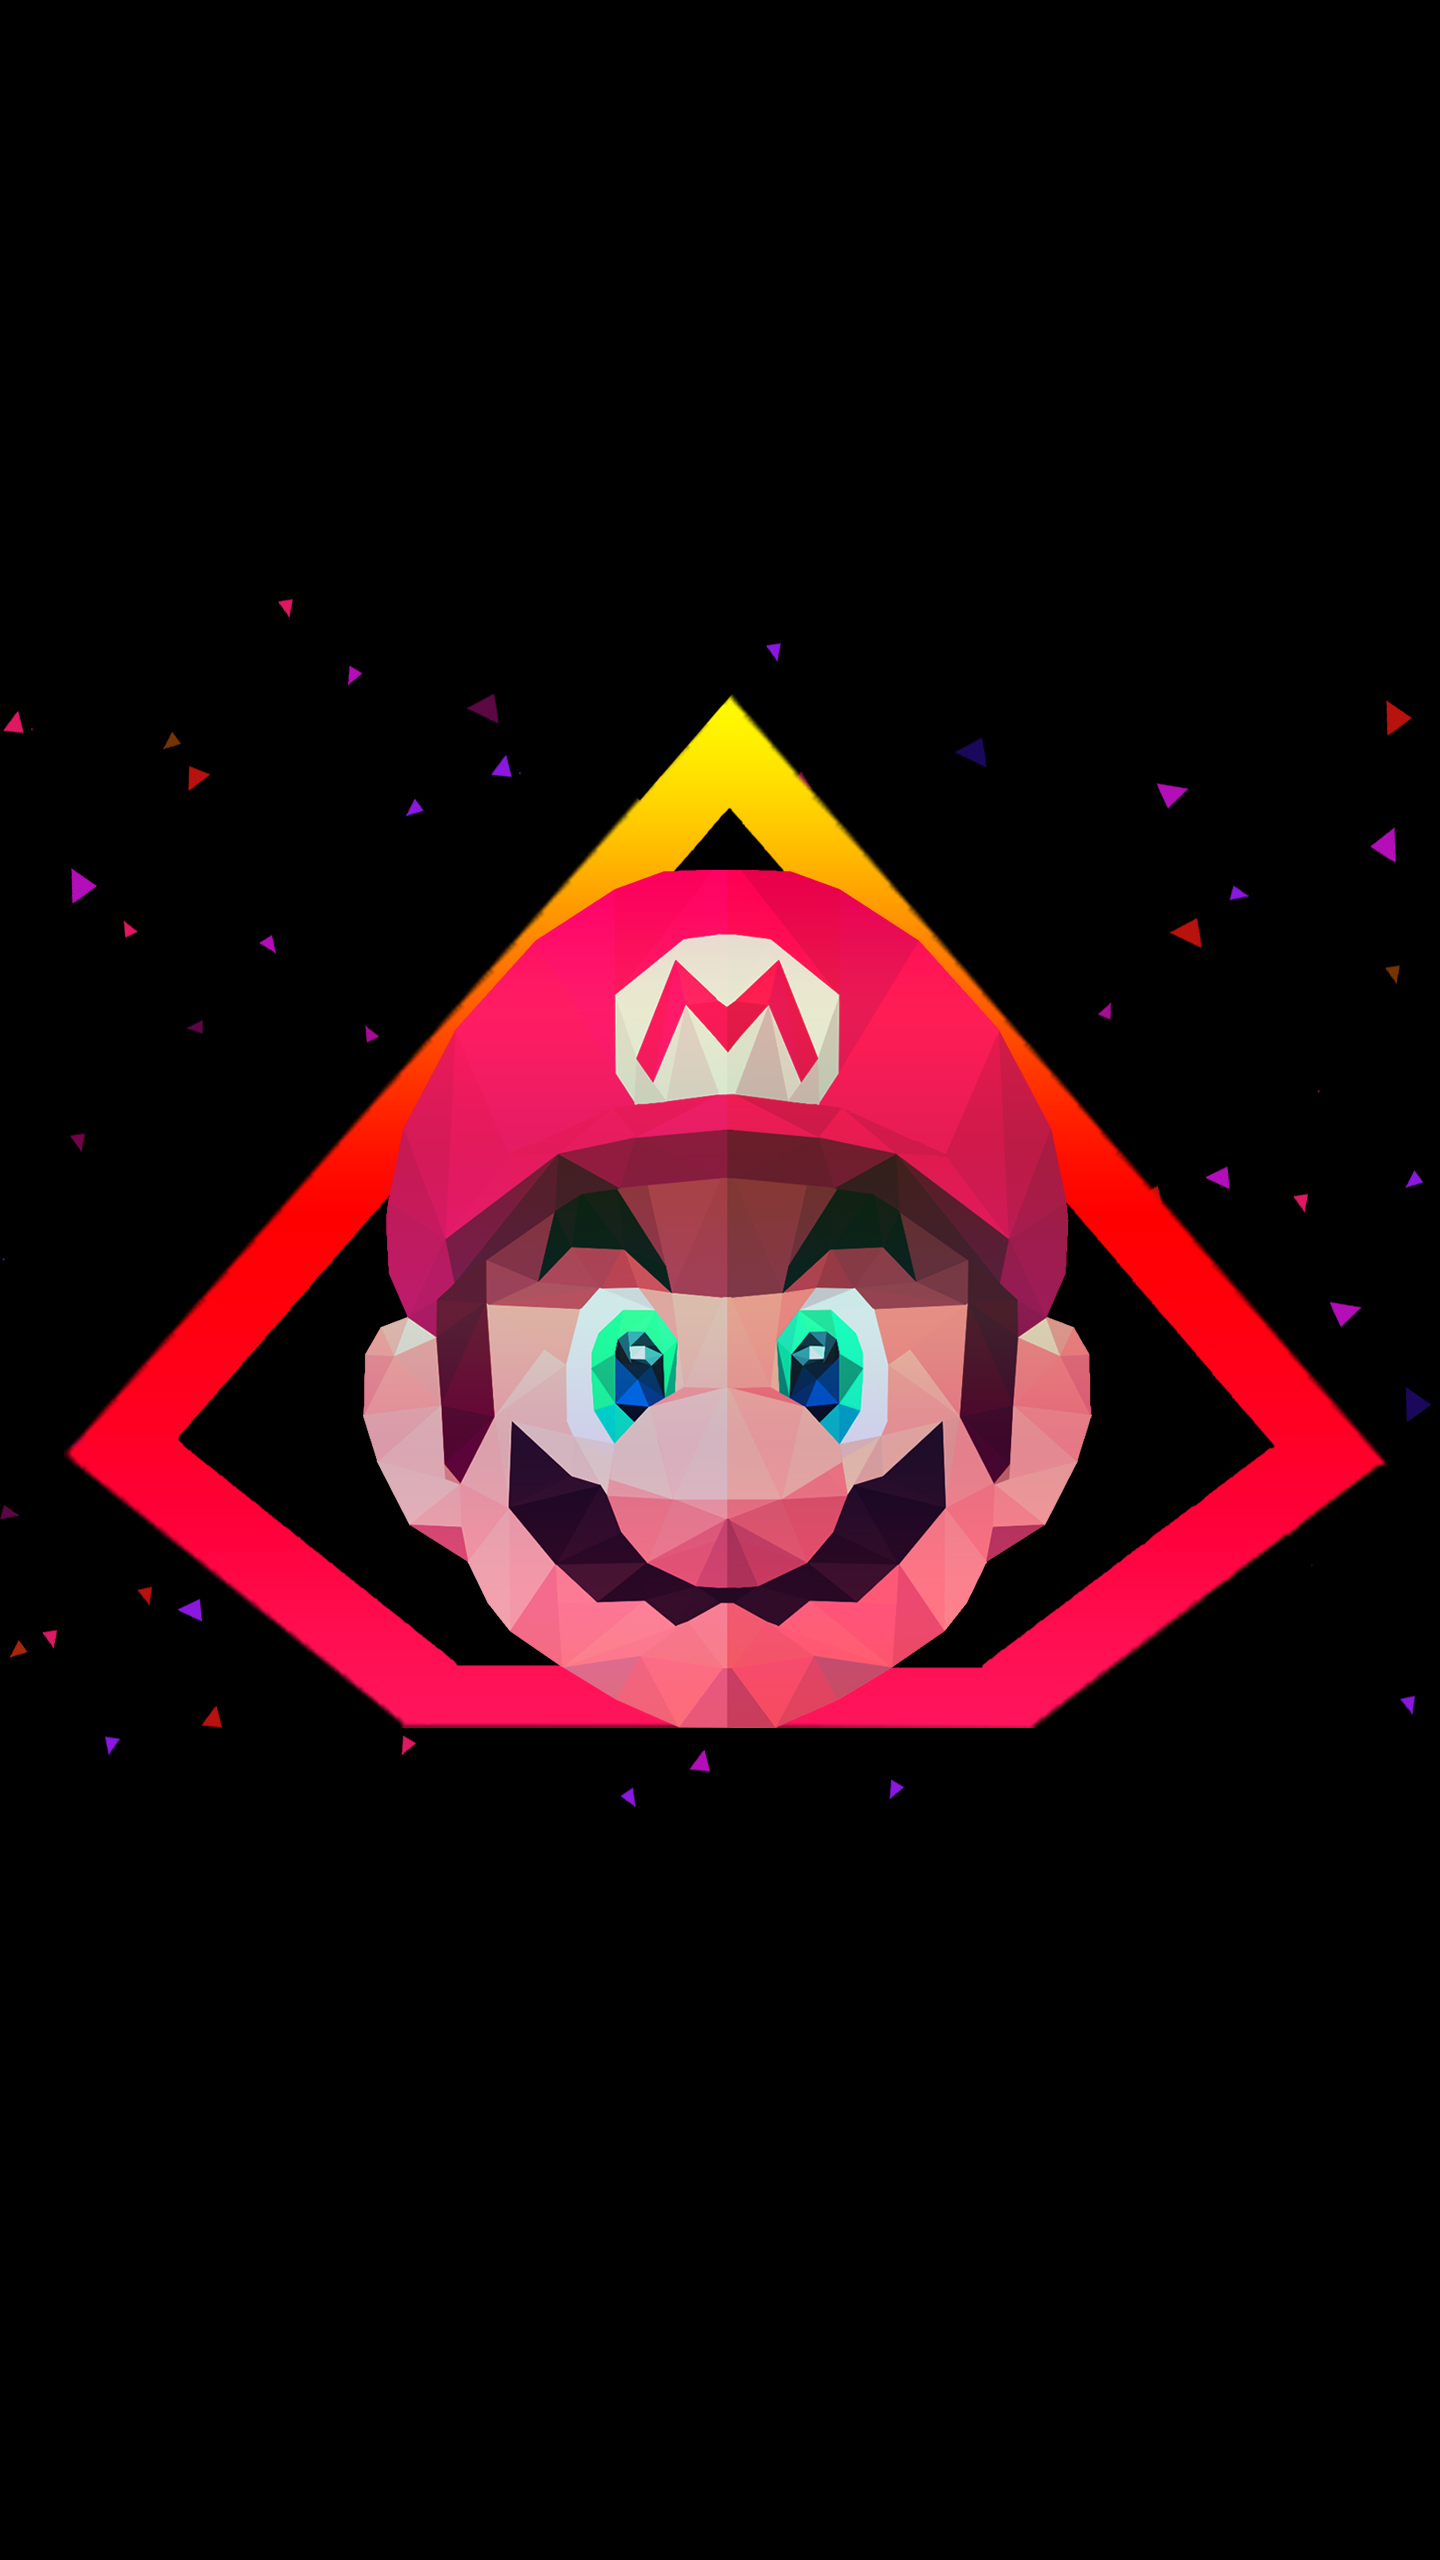 Super Mario Low poly Artwork